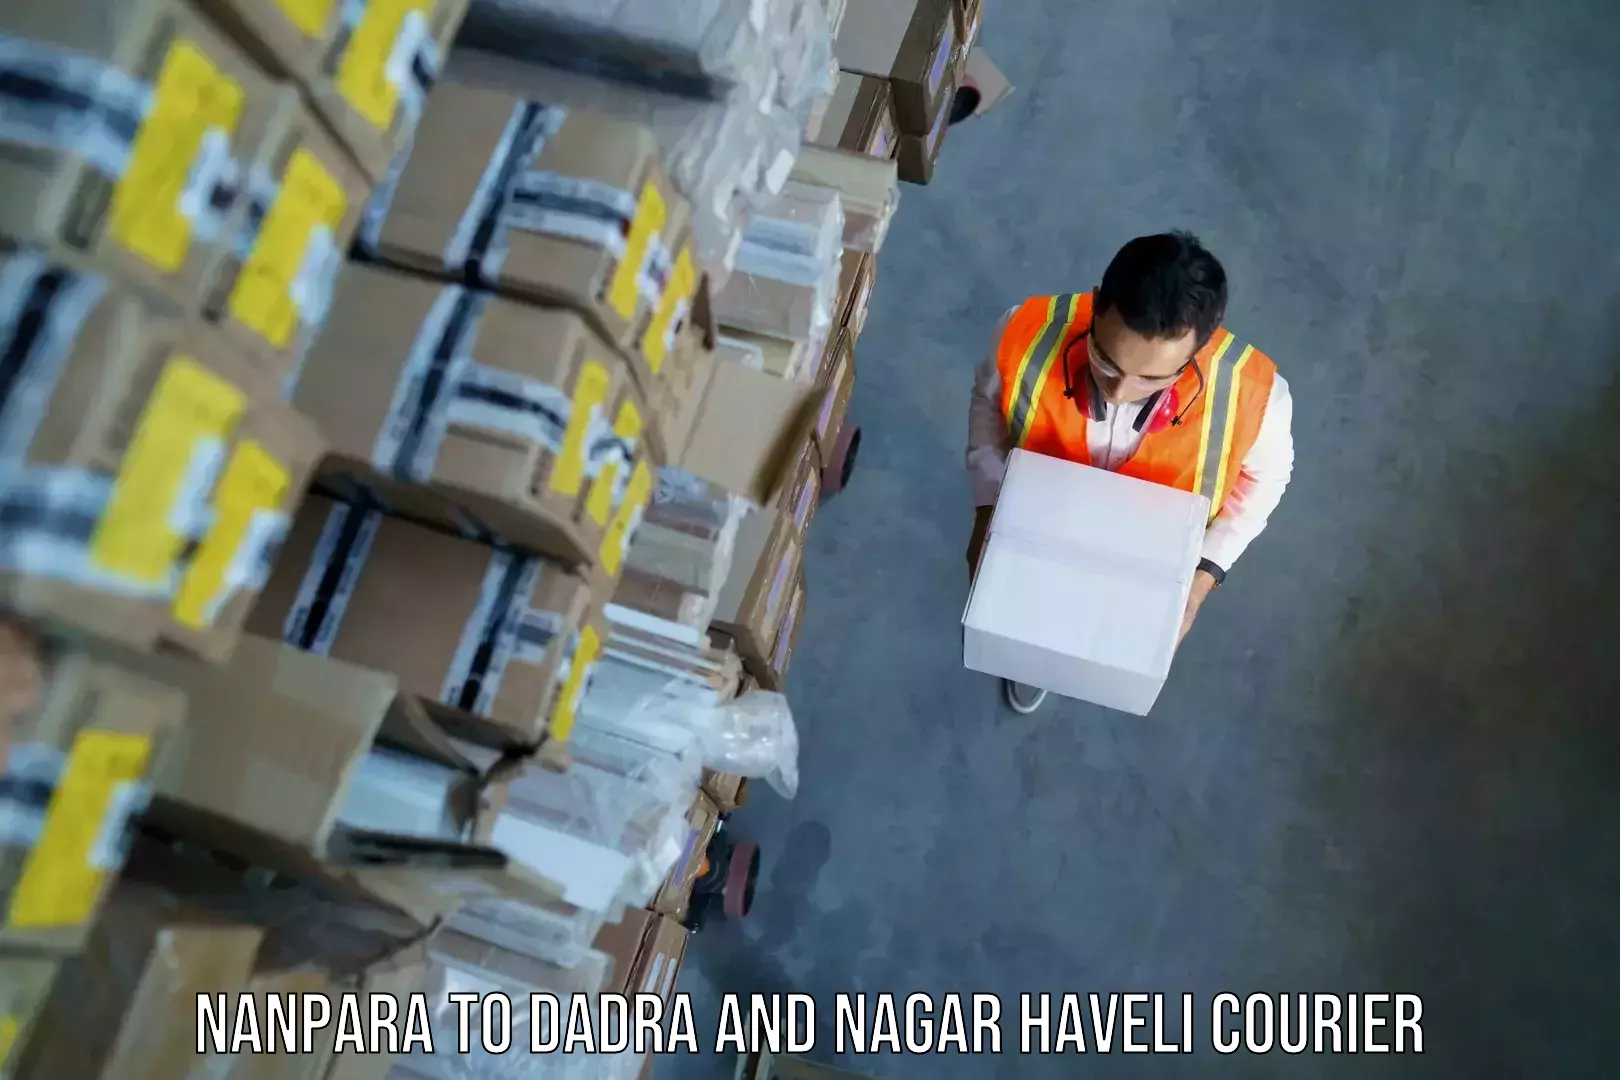 Baggage shipping experts Nanpara to Dadra and Nagar Haveli